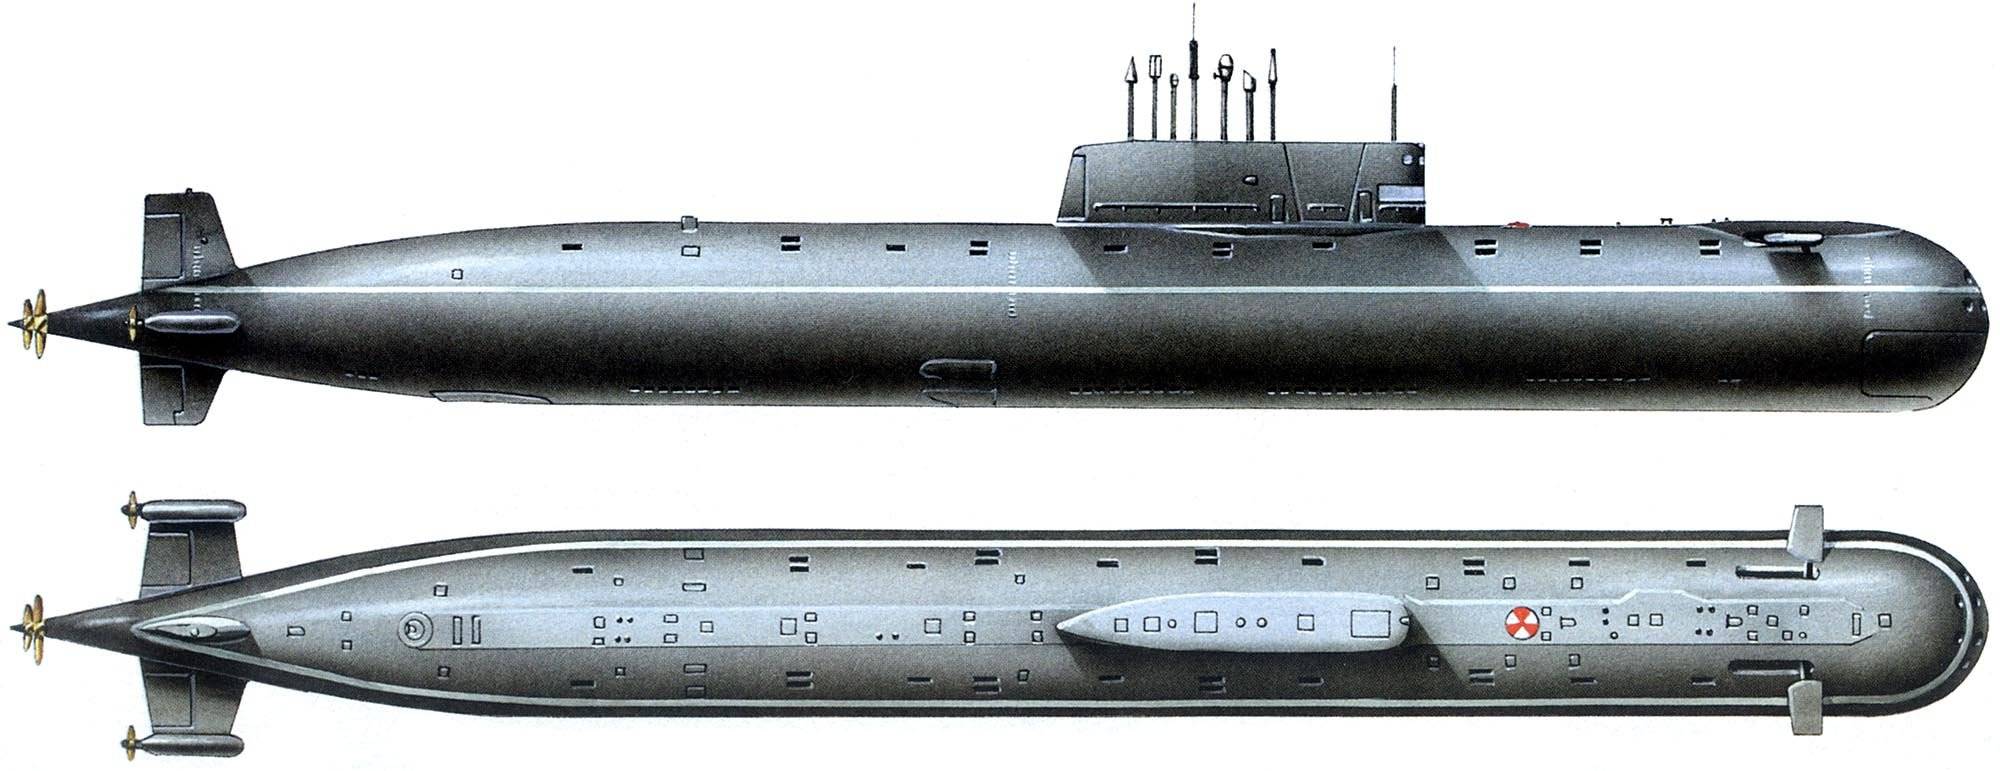 383,атомная подводная лодка комсомолец — разбираем суть